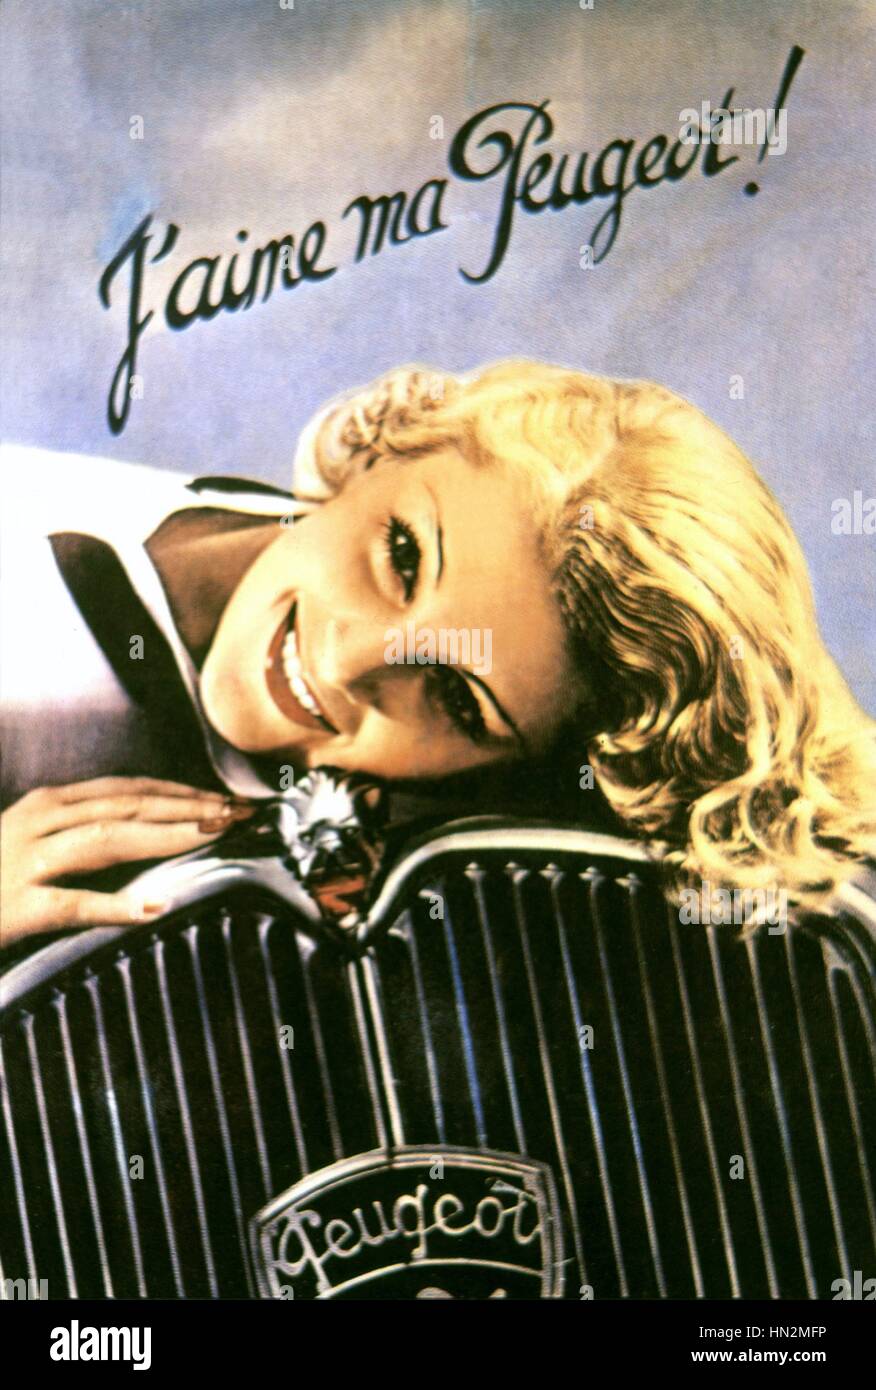 Affiche publicitaire pour l'automobile Peugeot c.1935 France Banque D'Images